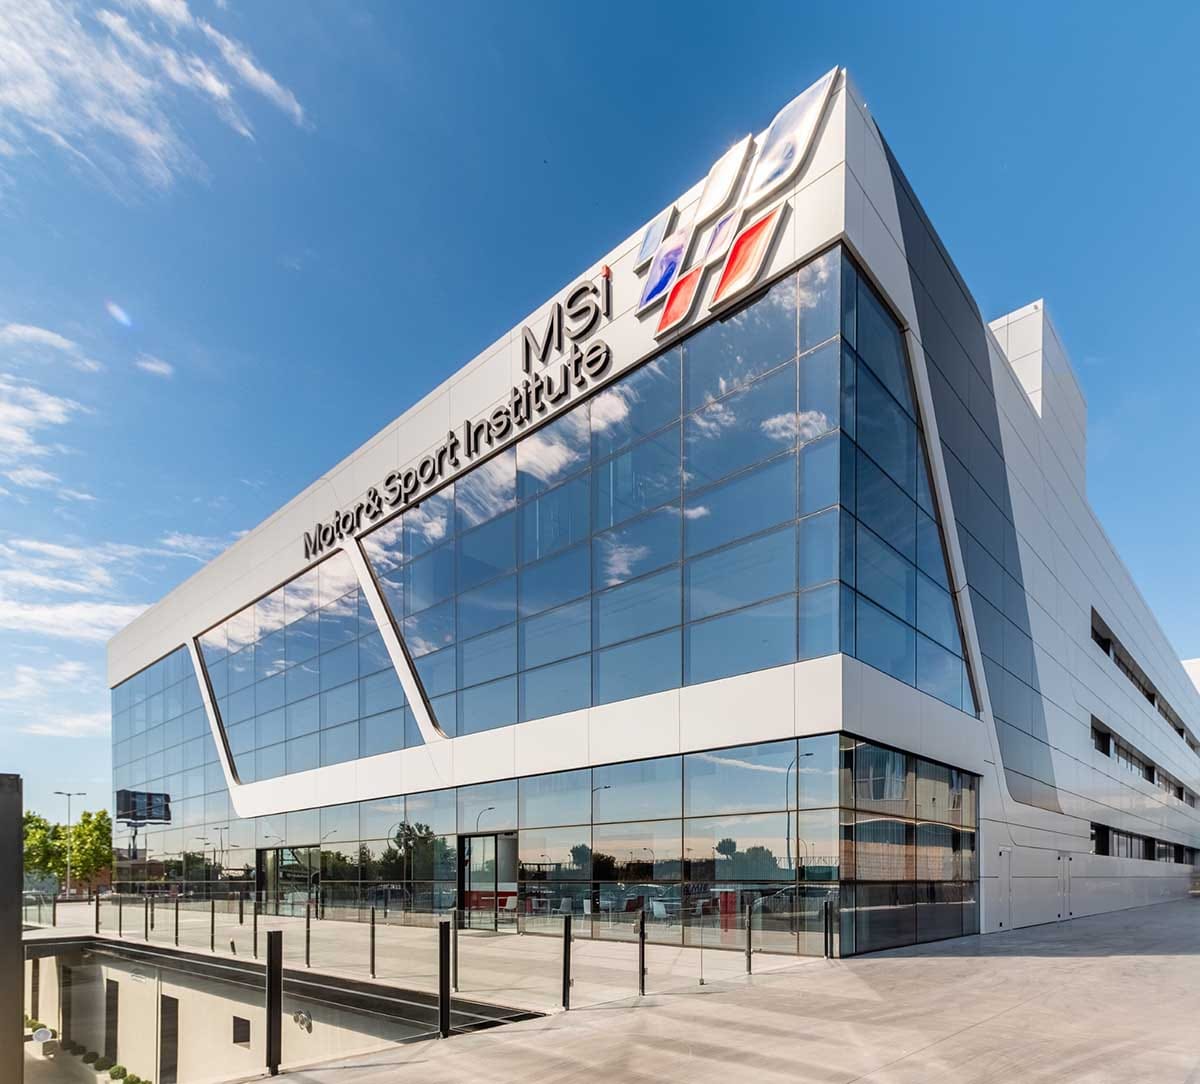 El mejor simulador de Fórmula 1 de Europa está en Alcorcón